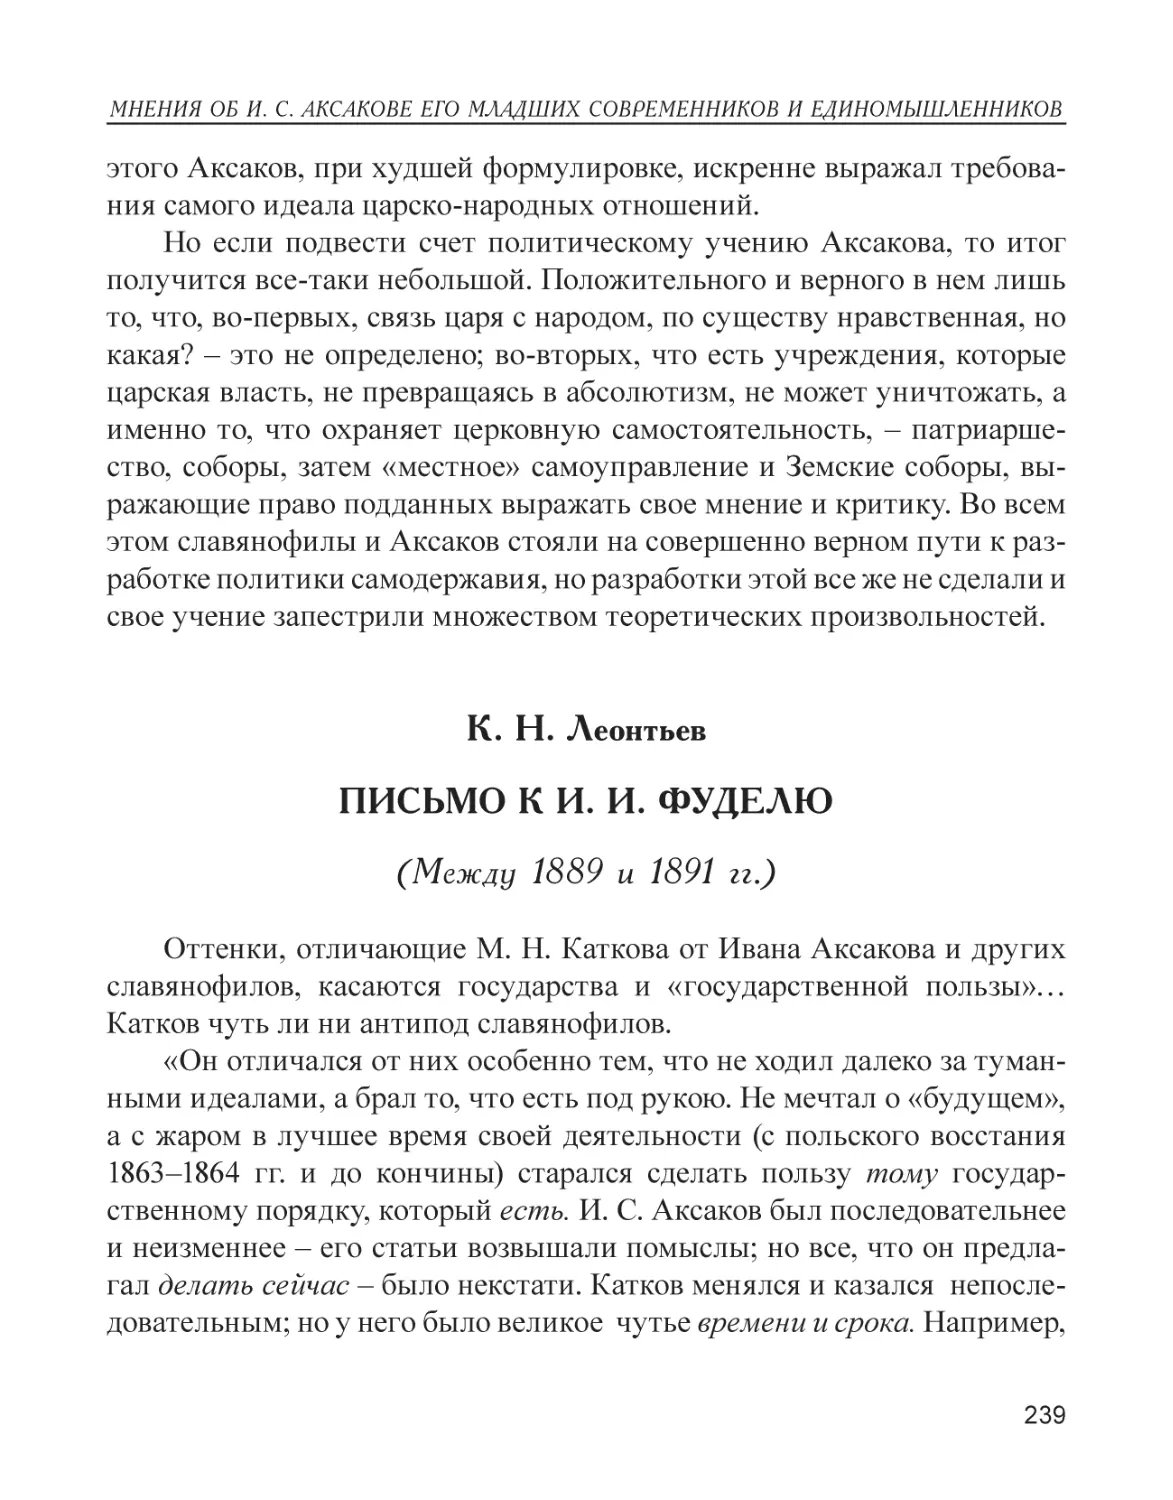 К. Н. Леонтьев. Письмо к И. И. Фуделю (между 1889 и 1891 гг.)